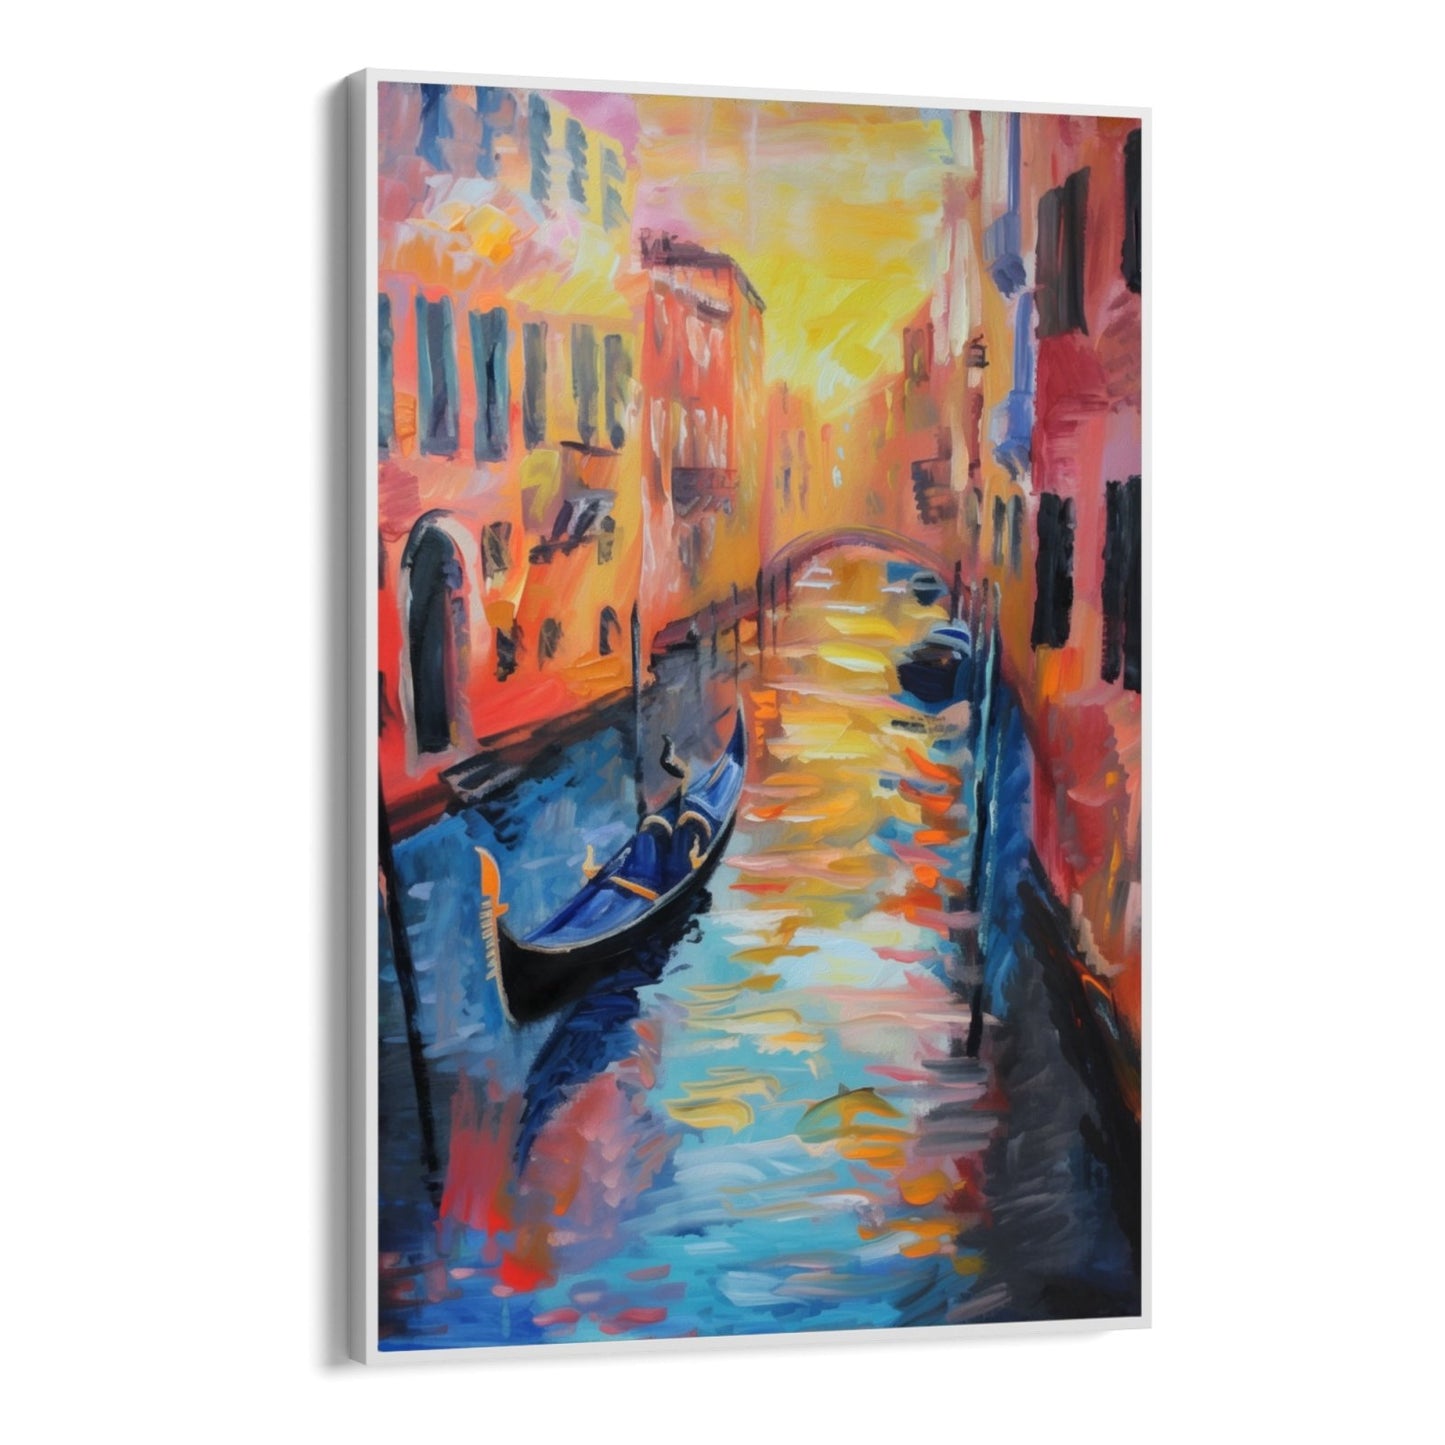 Venecia abstracta